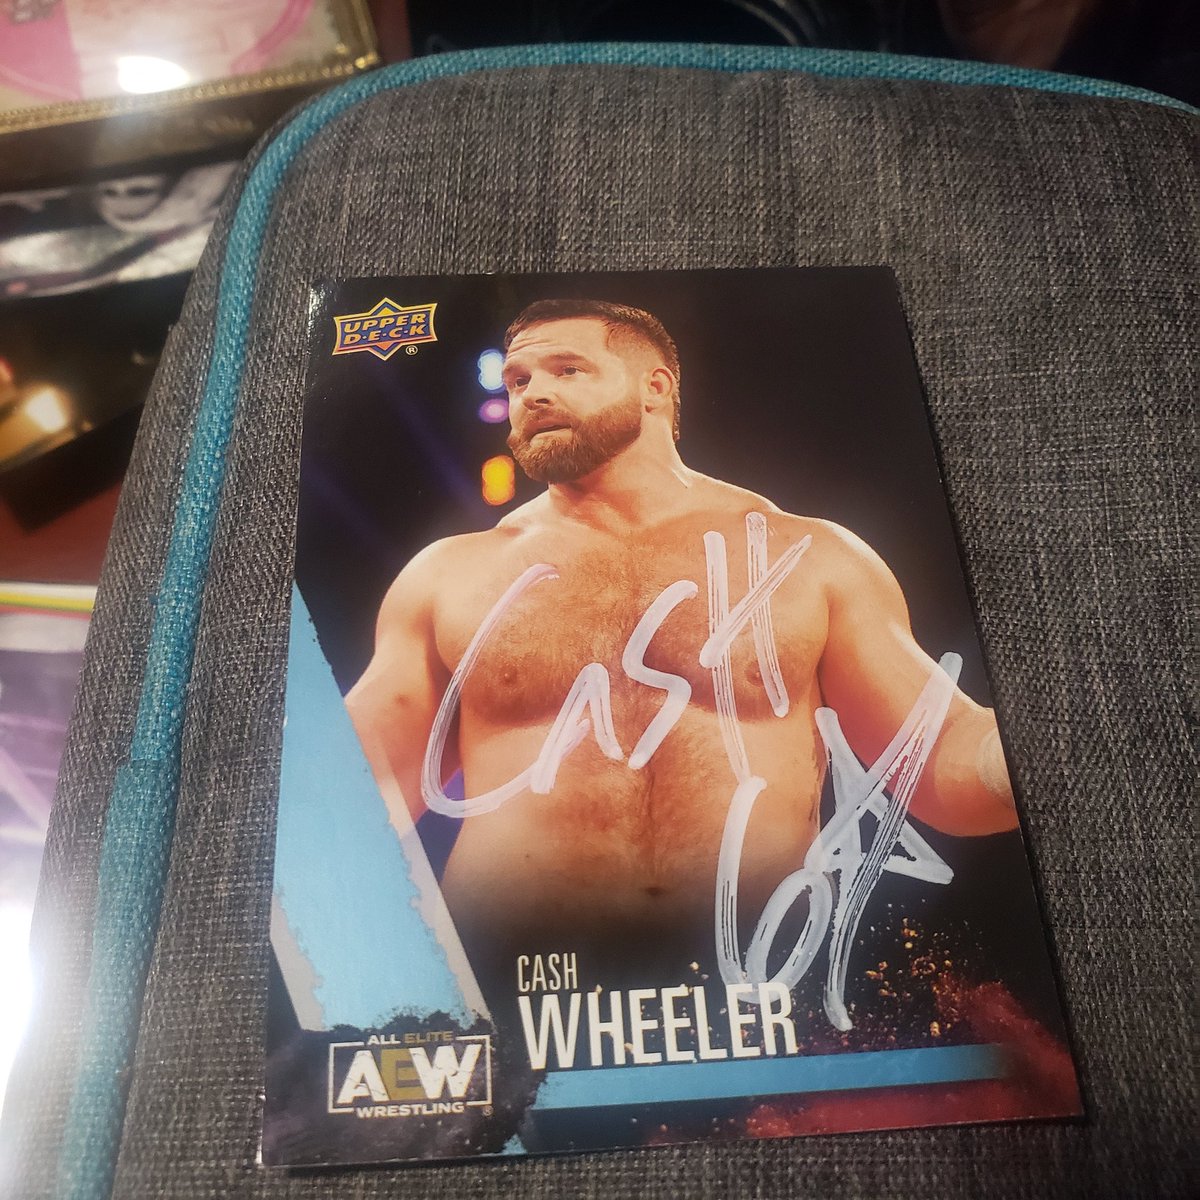 @anthonyvito8 Signed cash Wheeler $60 
#wrestlingcards
#wrestlingcardwednesday